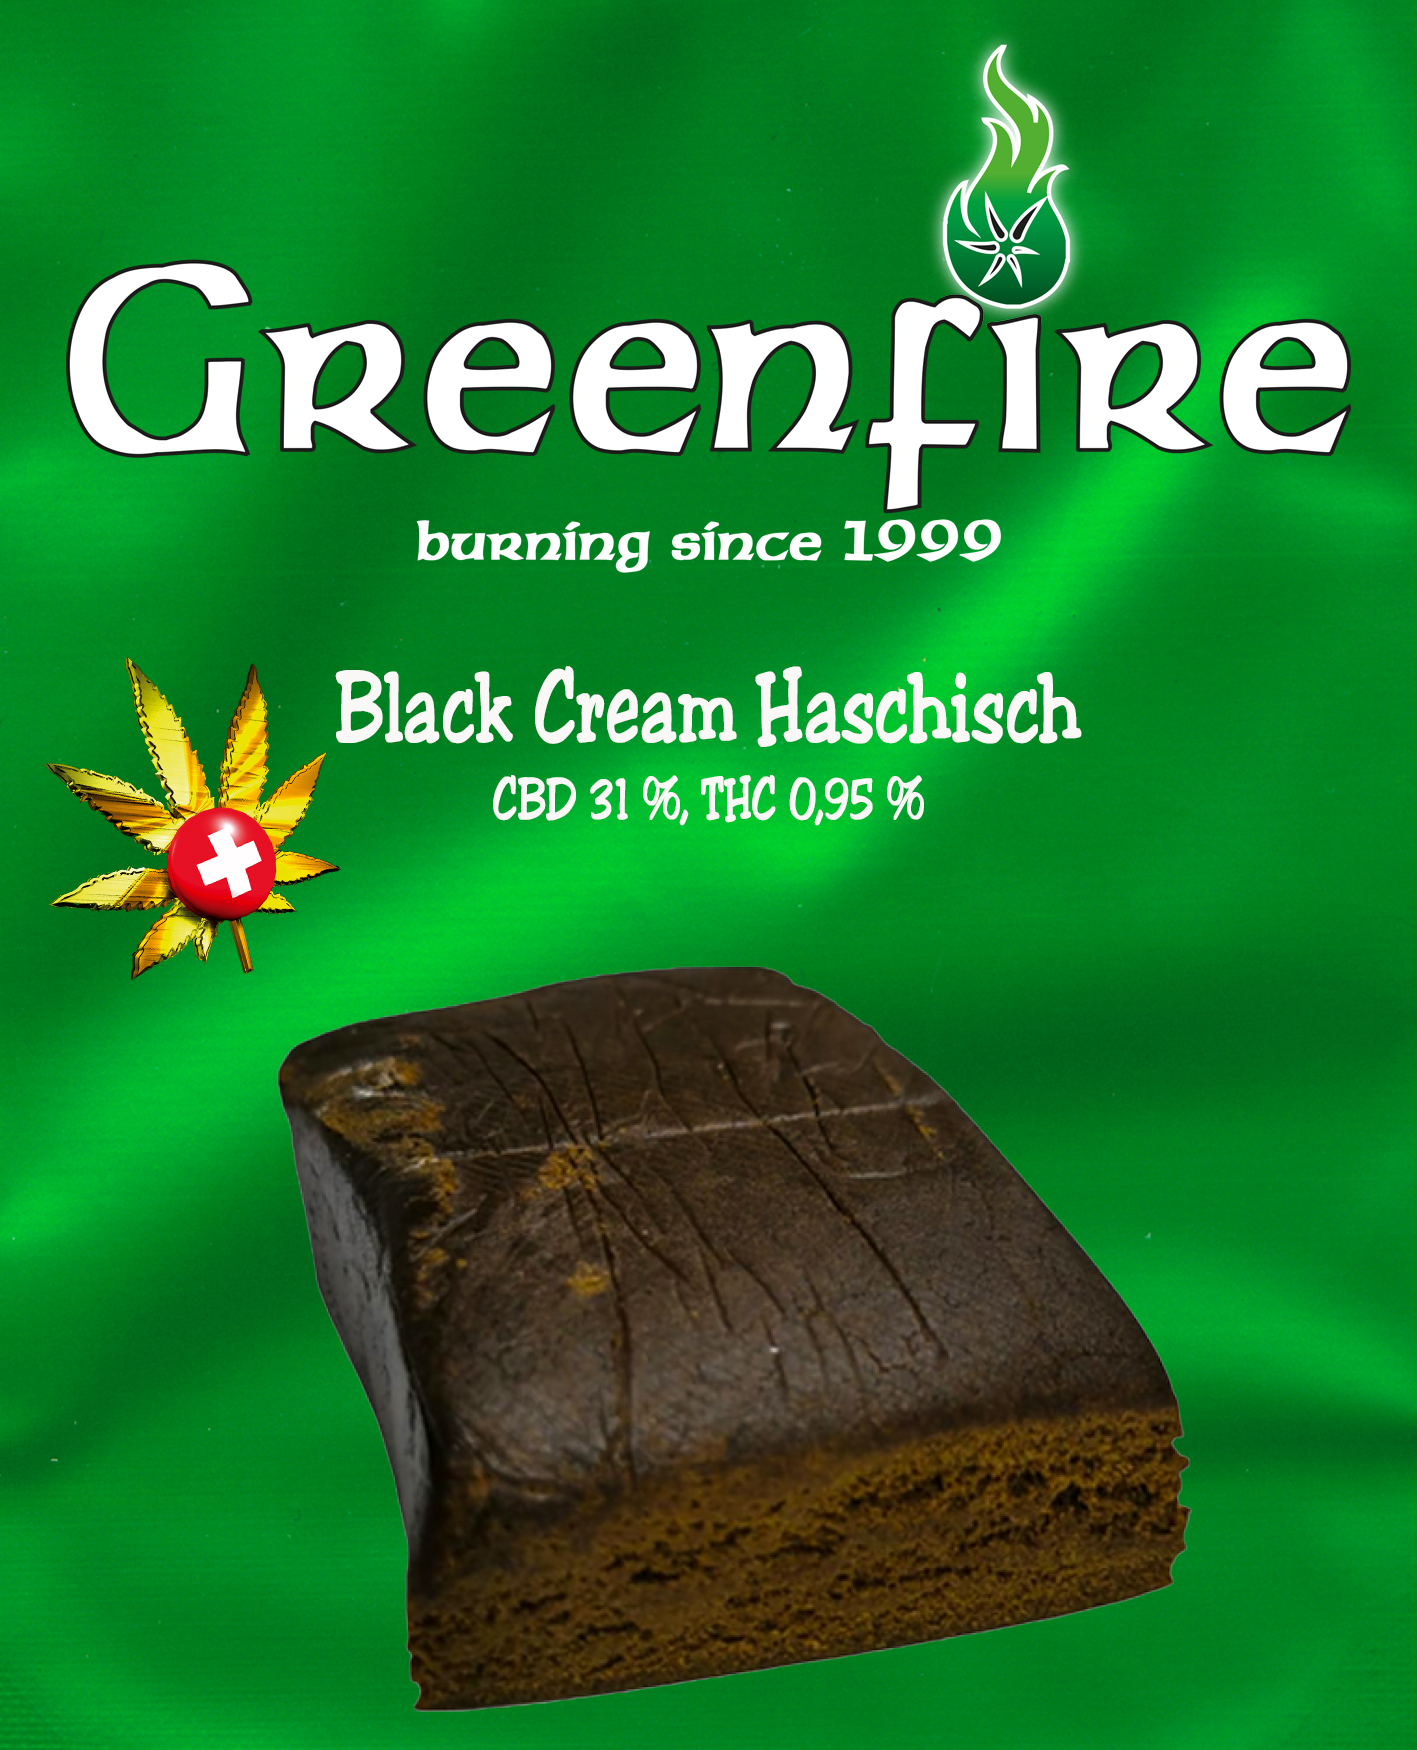 Black Cream Haschisch